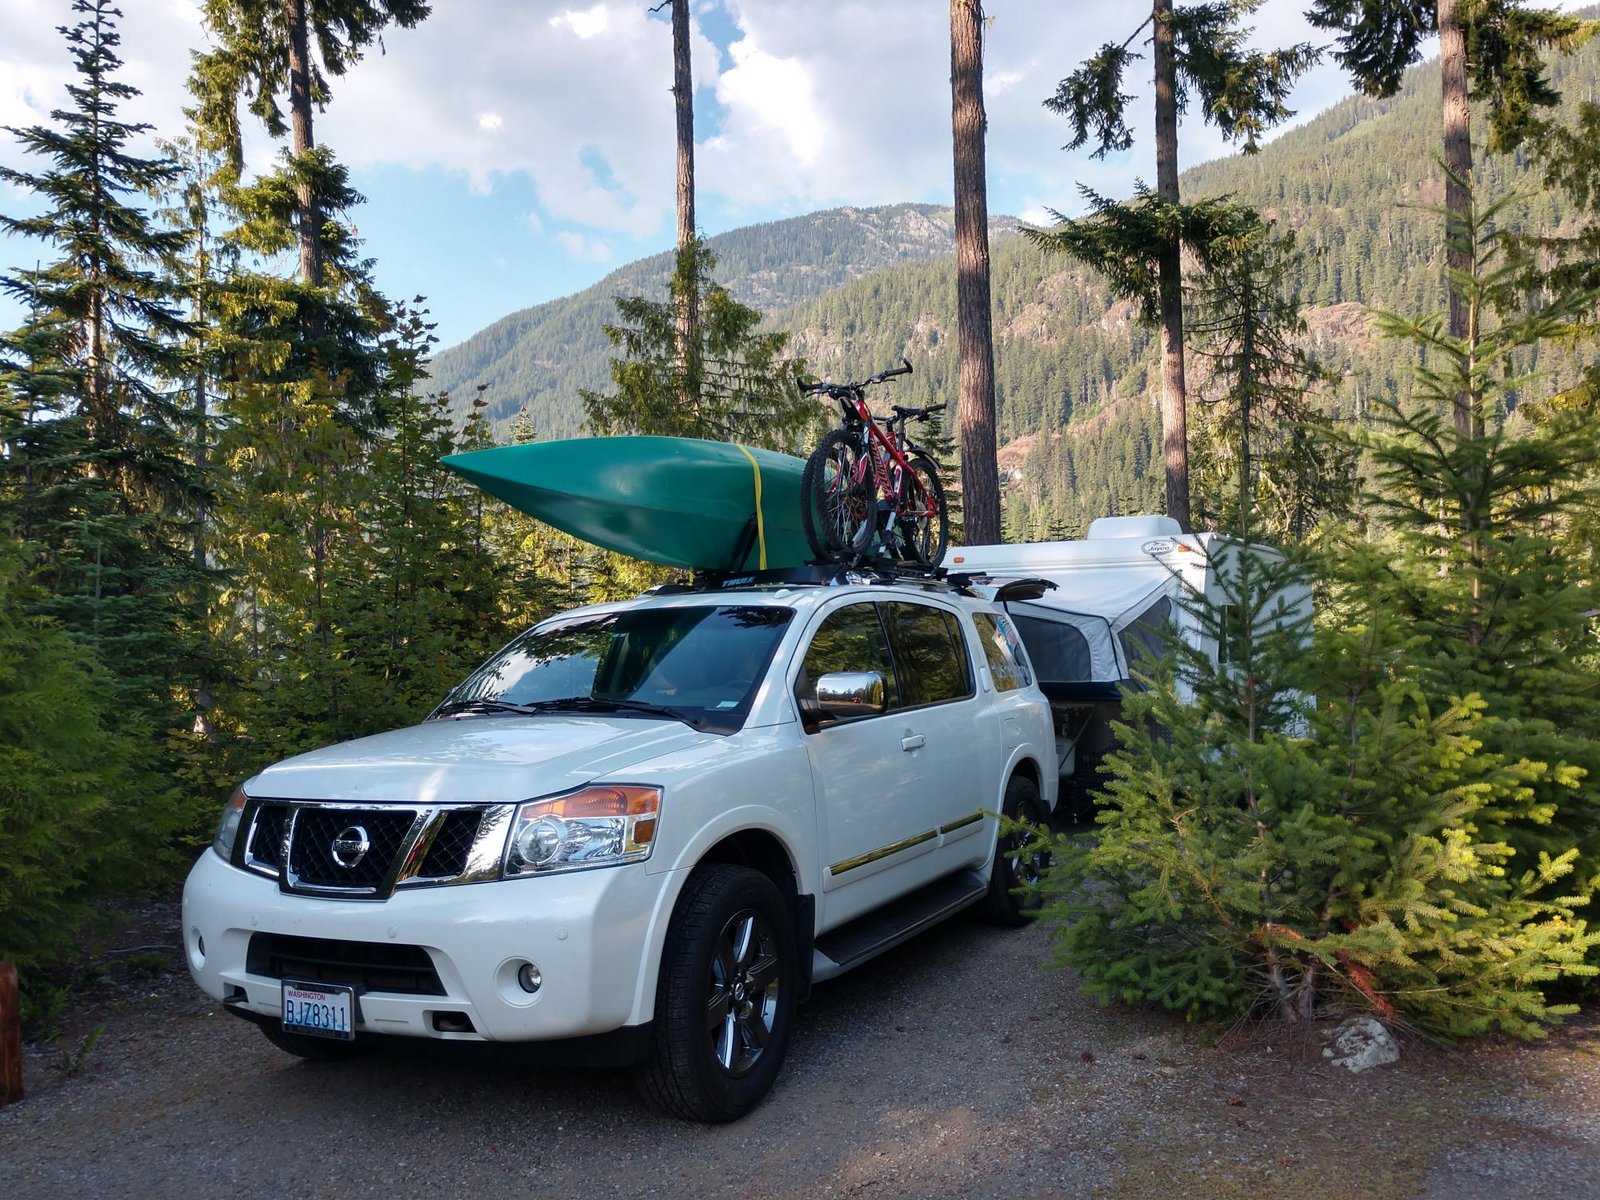 Camping at Lake Kachess, Washington